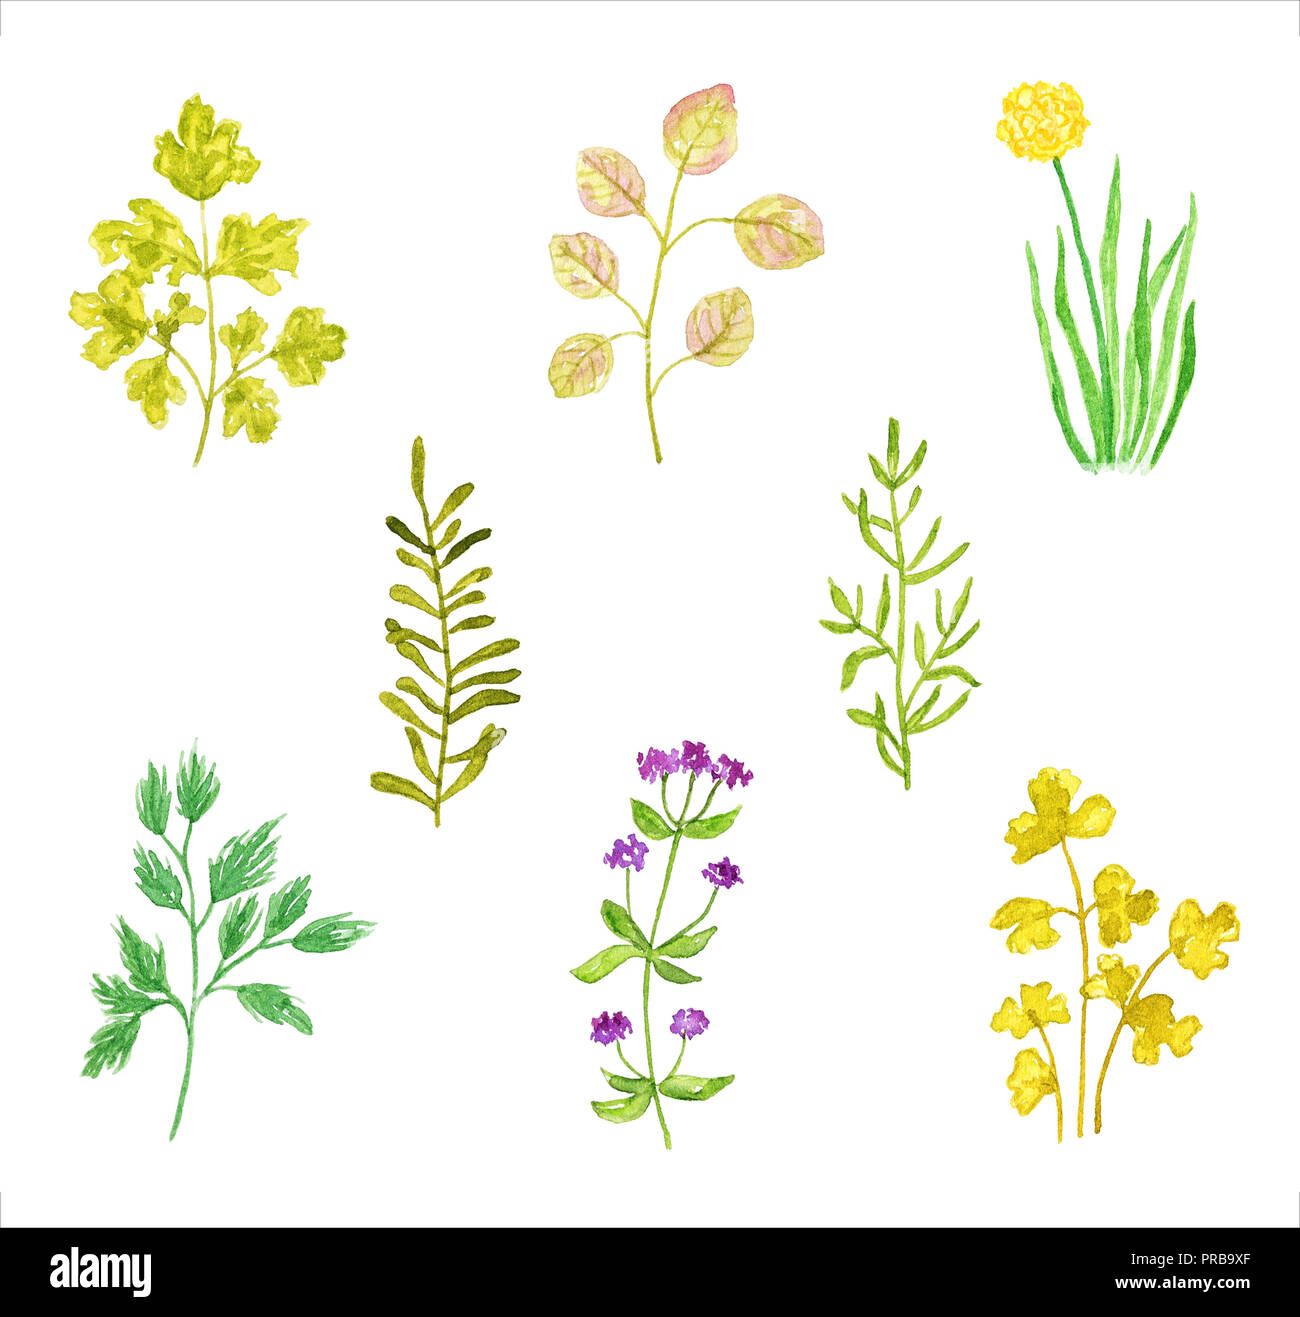 Ensemble de différentes herbes ou plantes, dessiné à la main et peint à l'aquarelle, isolé sur fond blanc. Partie 1 Banque D'Images